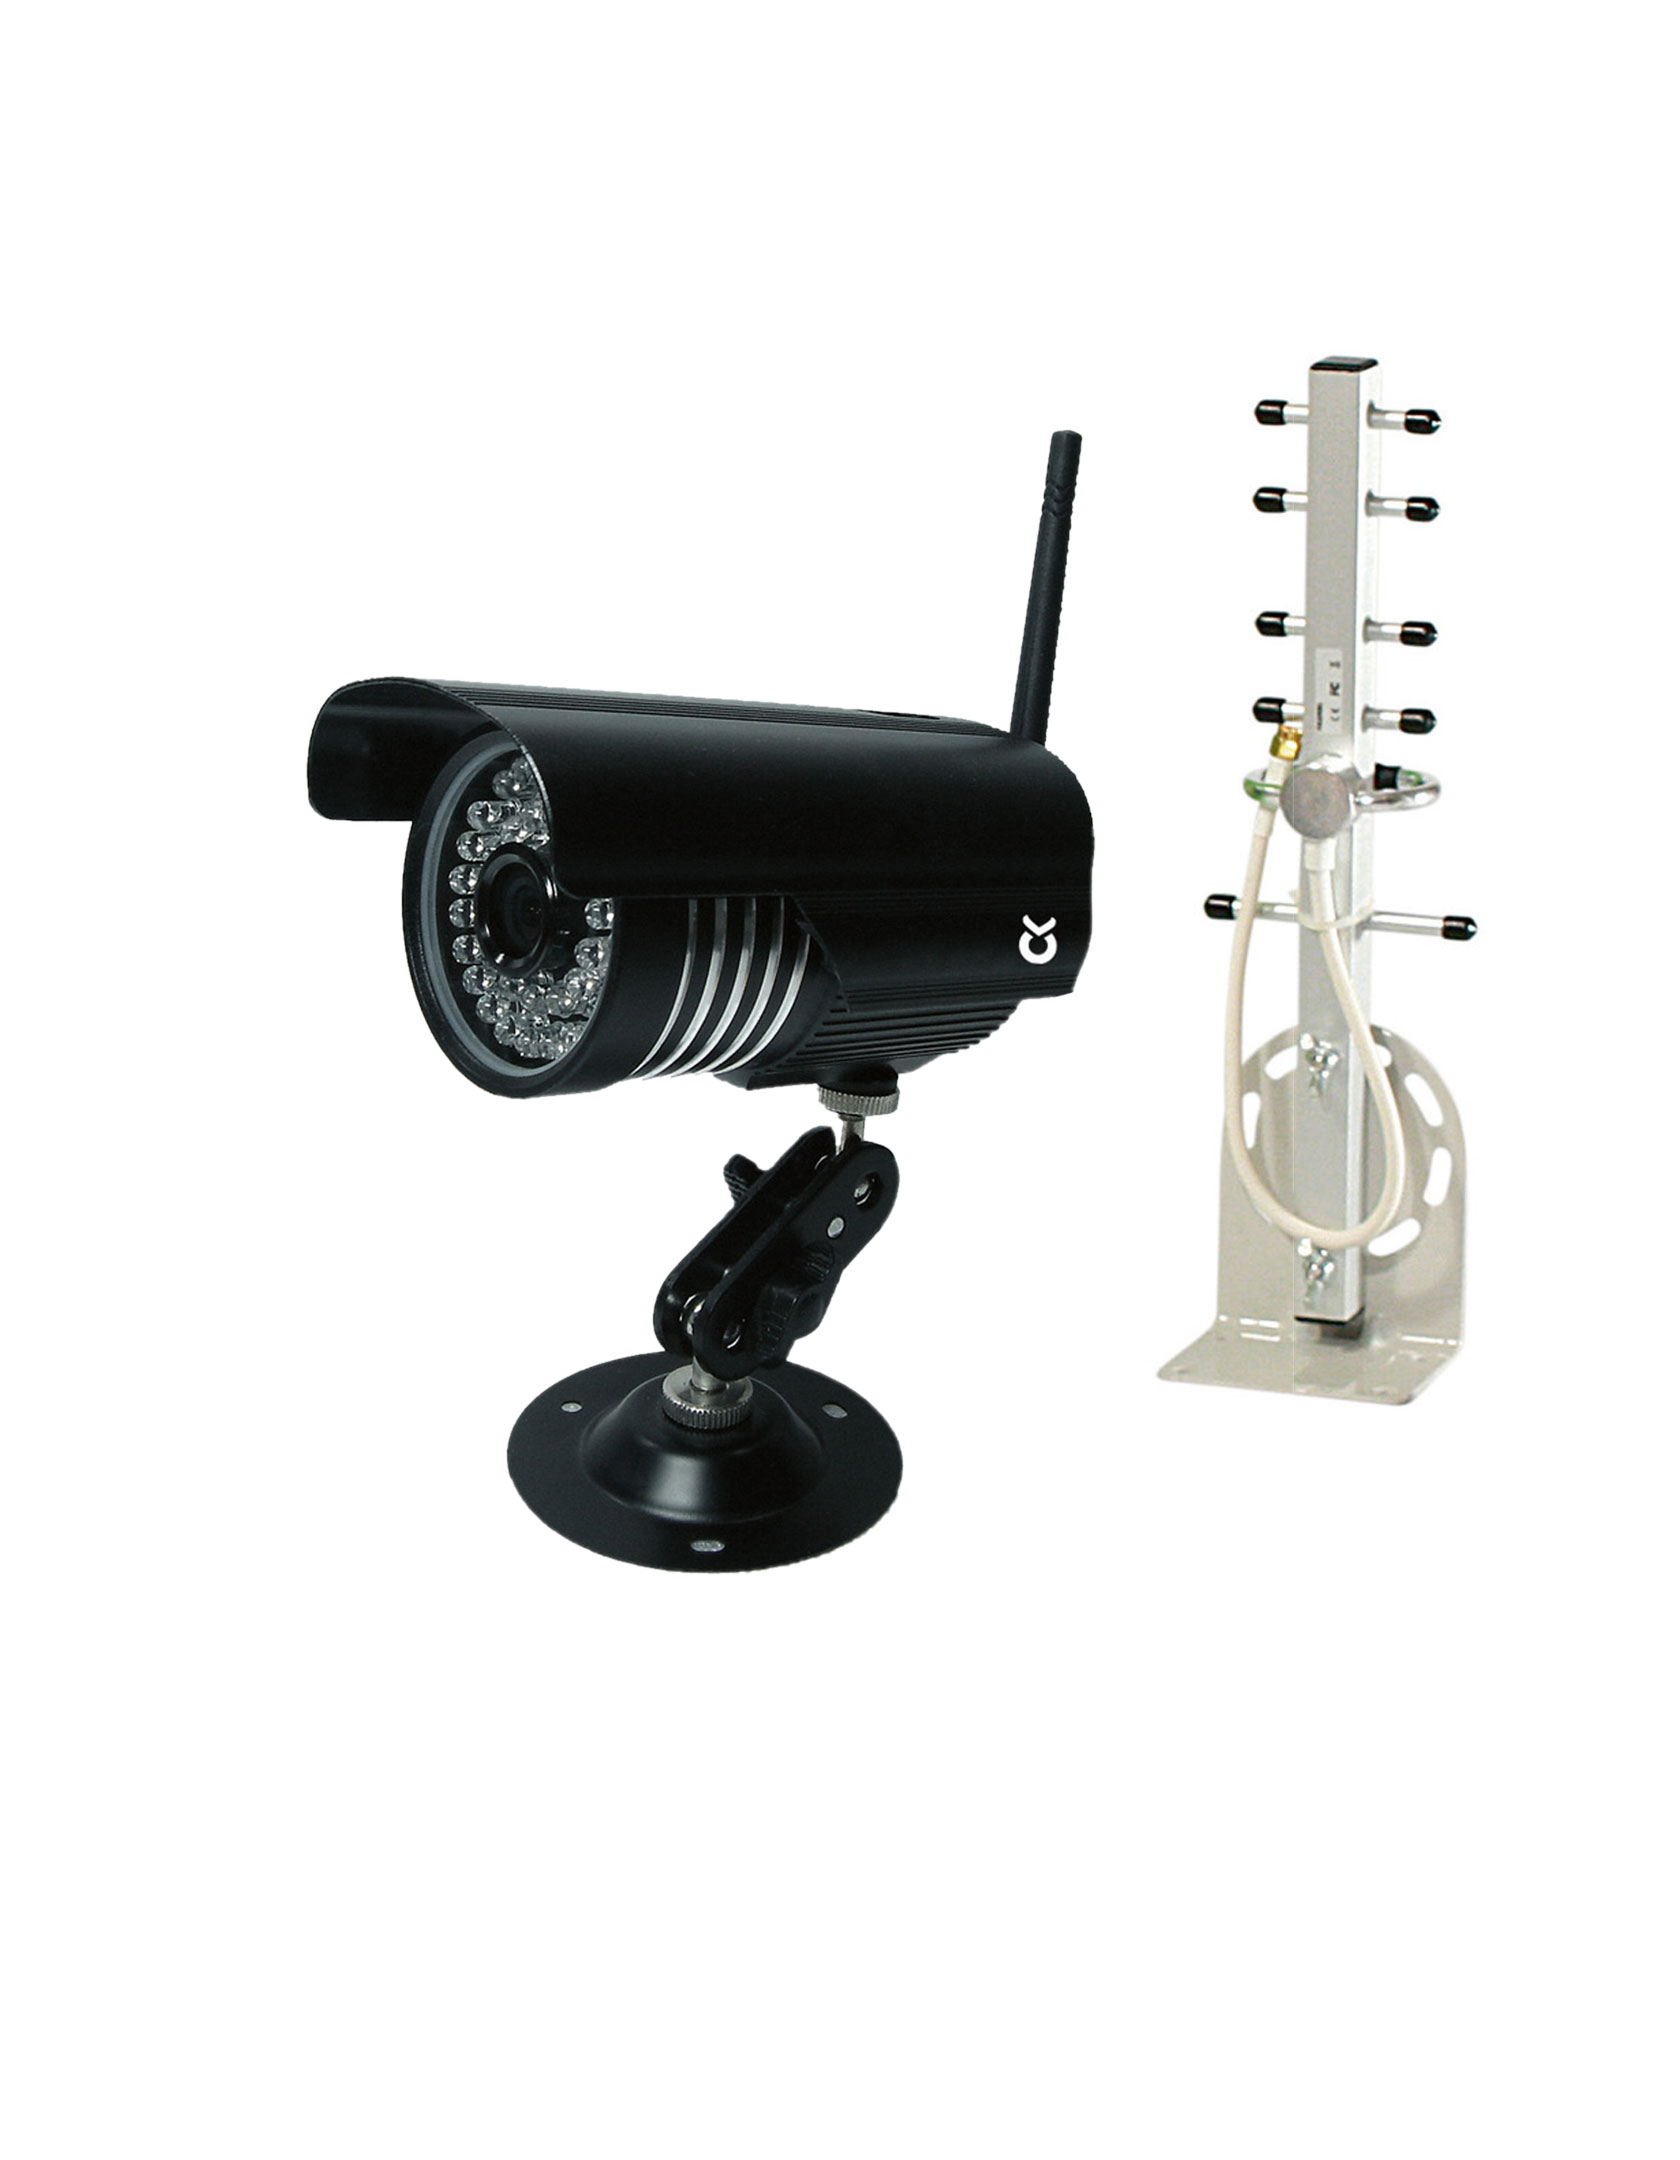 KERBL Stallkamera 2,4 GHz inkl. Außenantenne und Videokabel